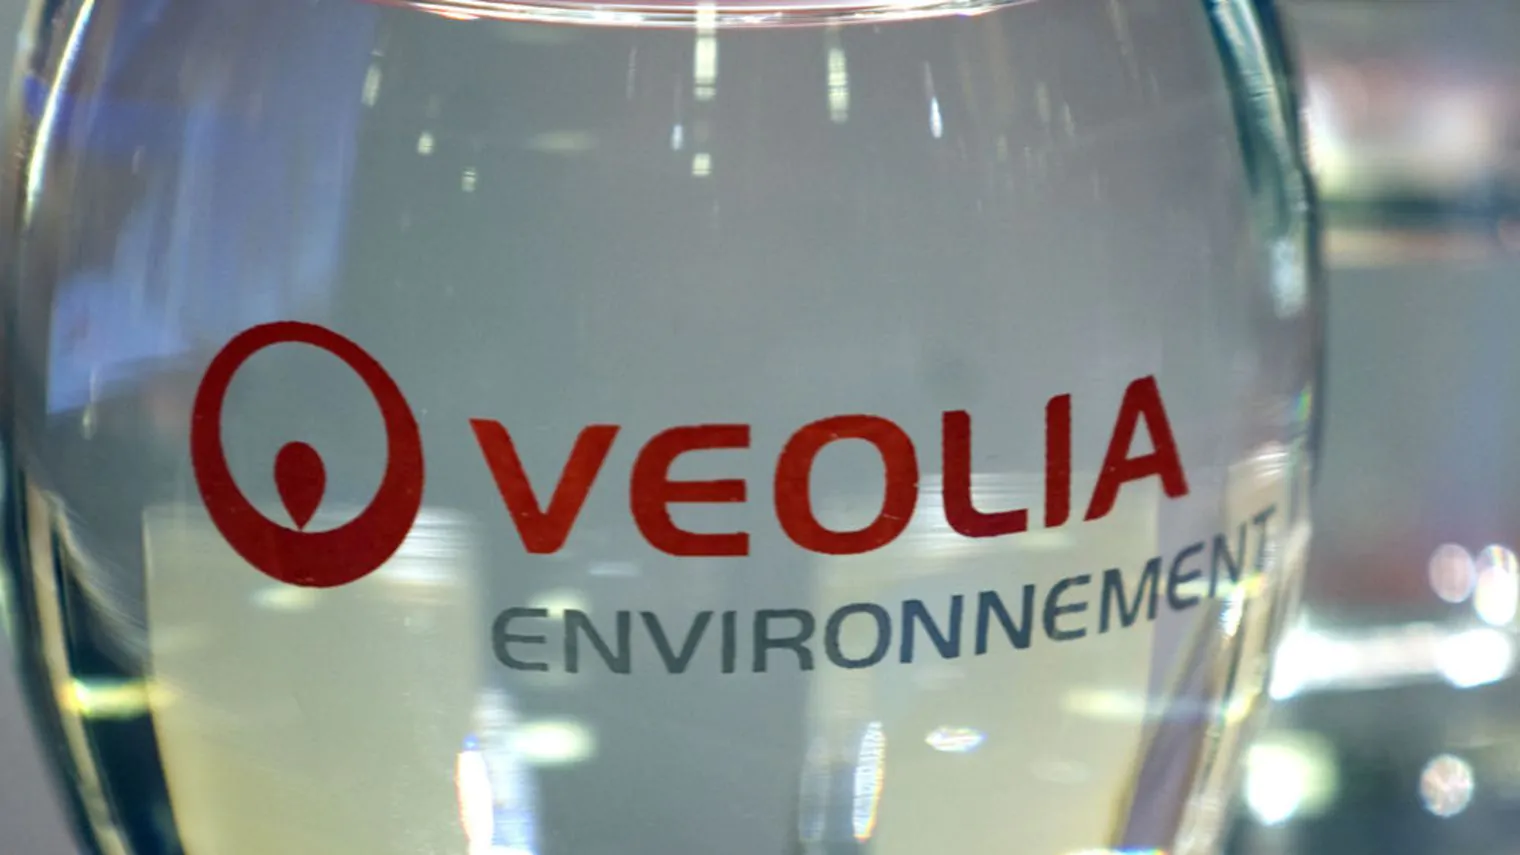 Veolia Environnement assume 600 funzionari nei prossimi cinque anni